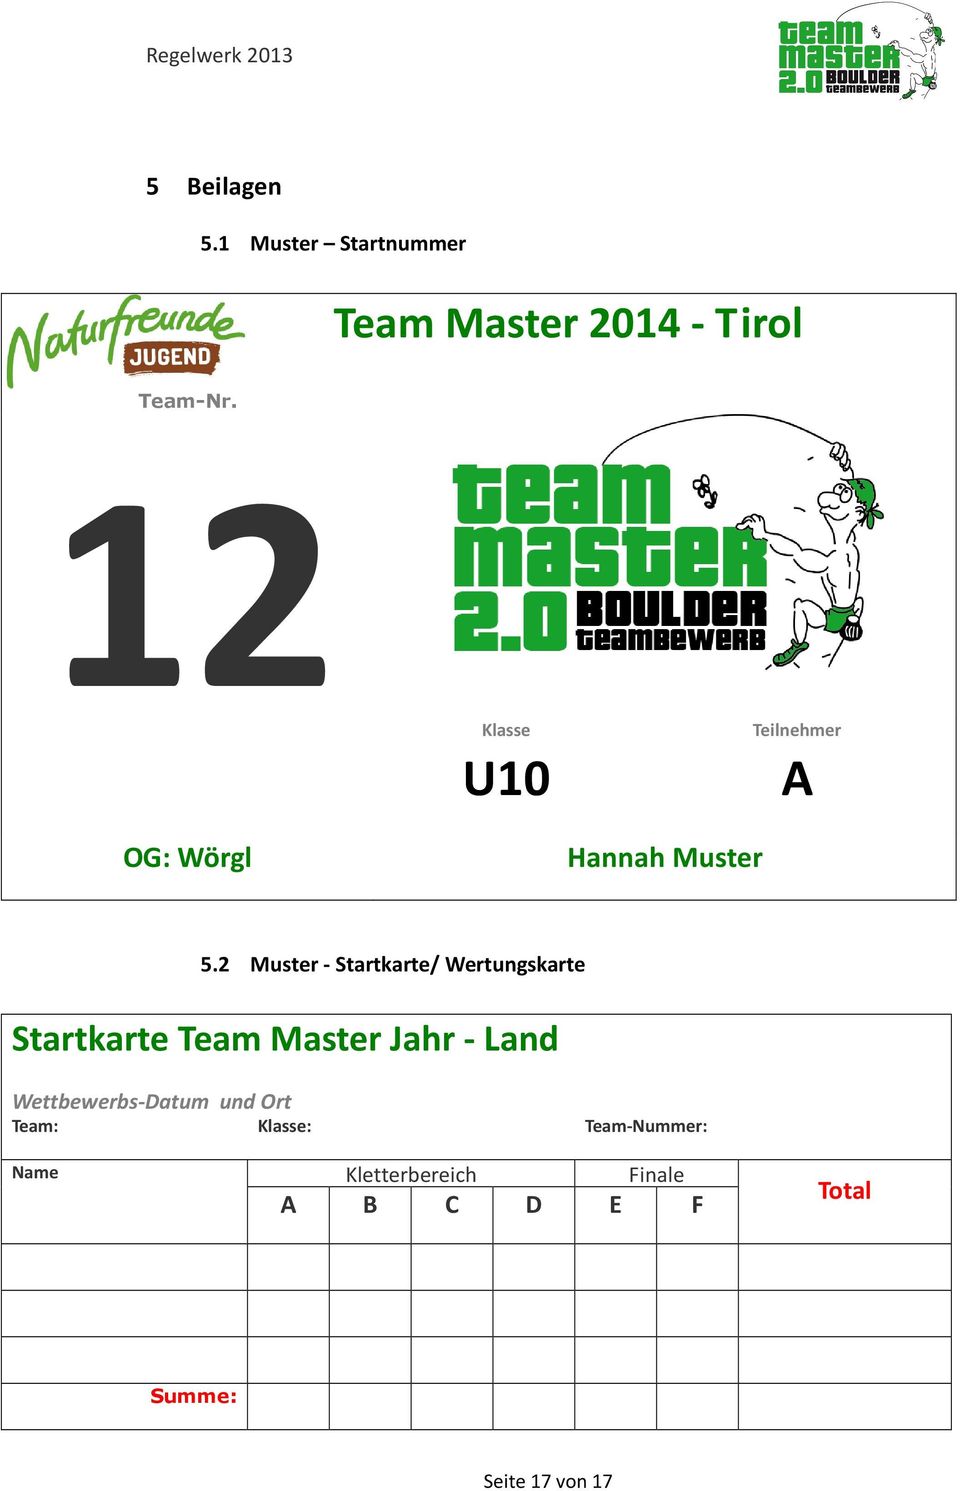 2 Muster - Startkarte/ Wertungskarte Startkarte Team Master Jahr - Land